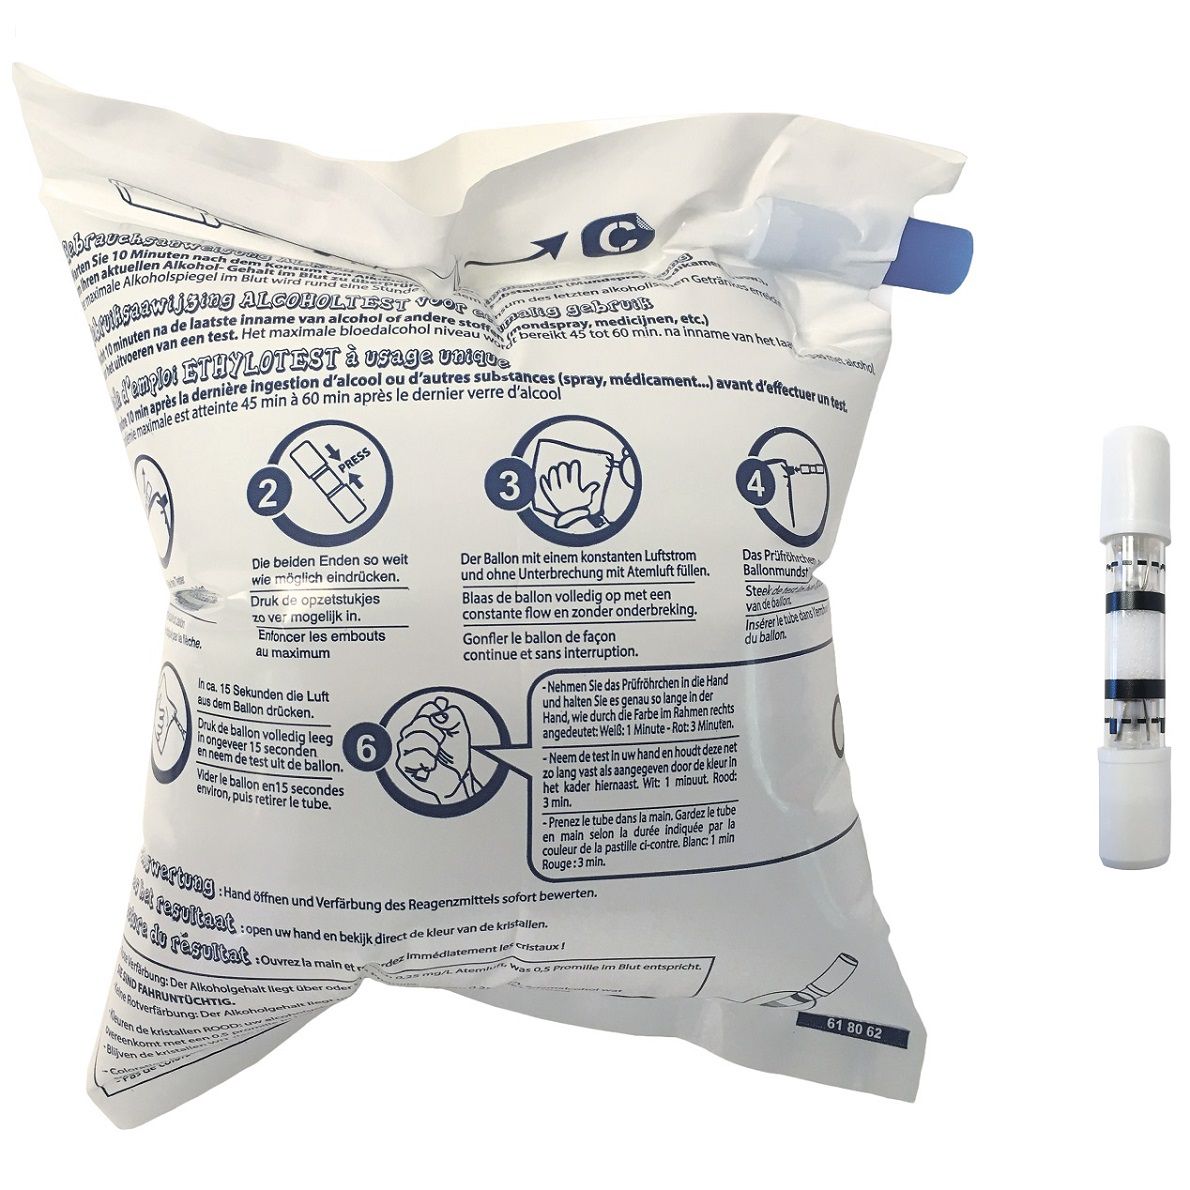 ACE Alkotest-Prüfröhrchen mit Ballon & NF-Zertifikat im DISPLAY (mit 25 einzeln verpackten Röhrchen)